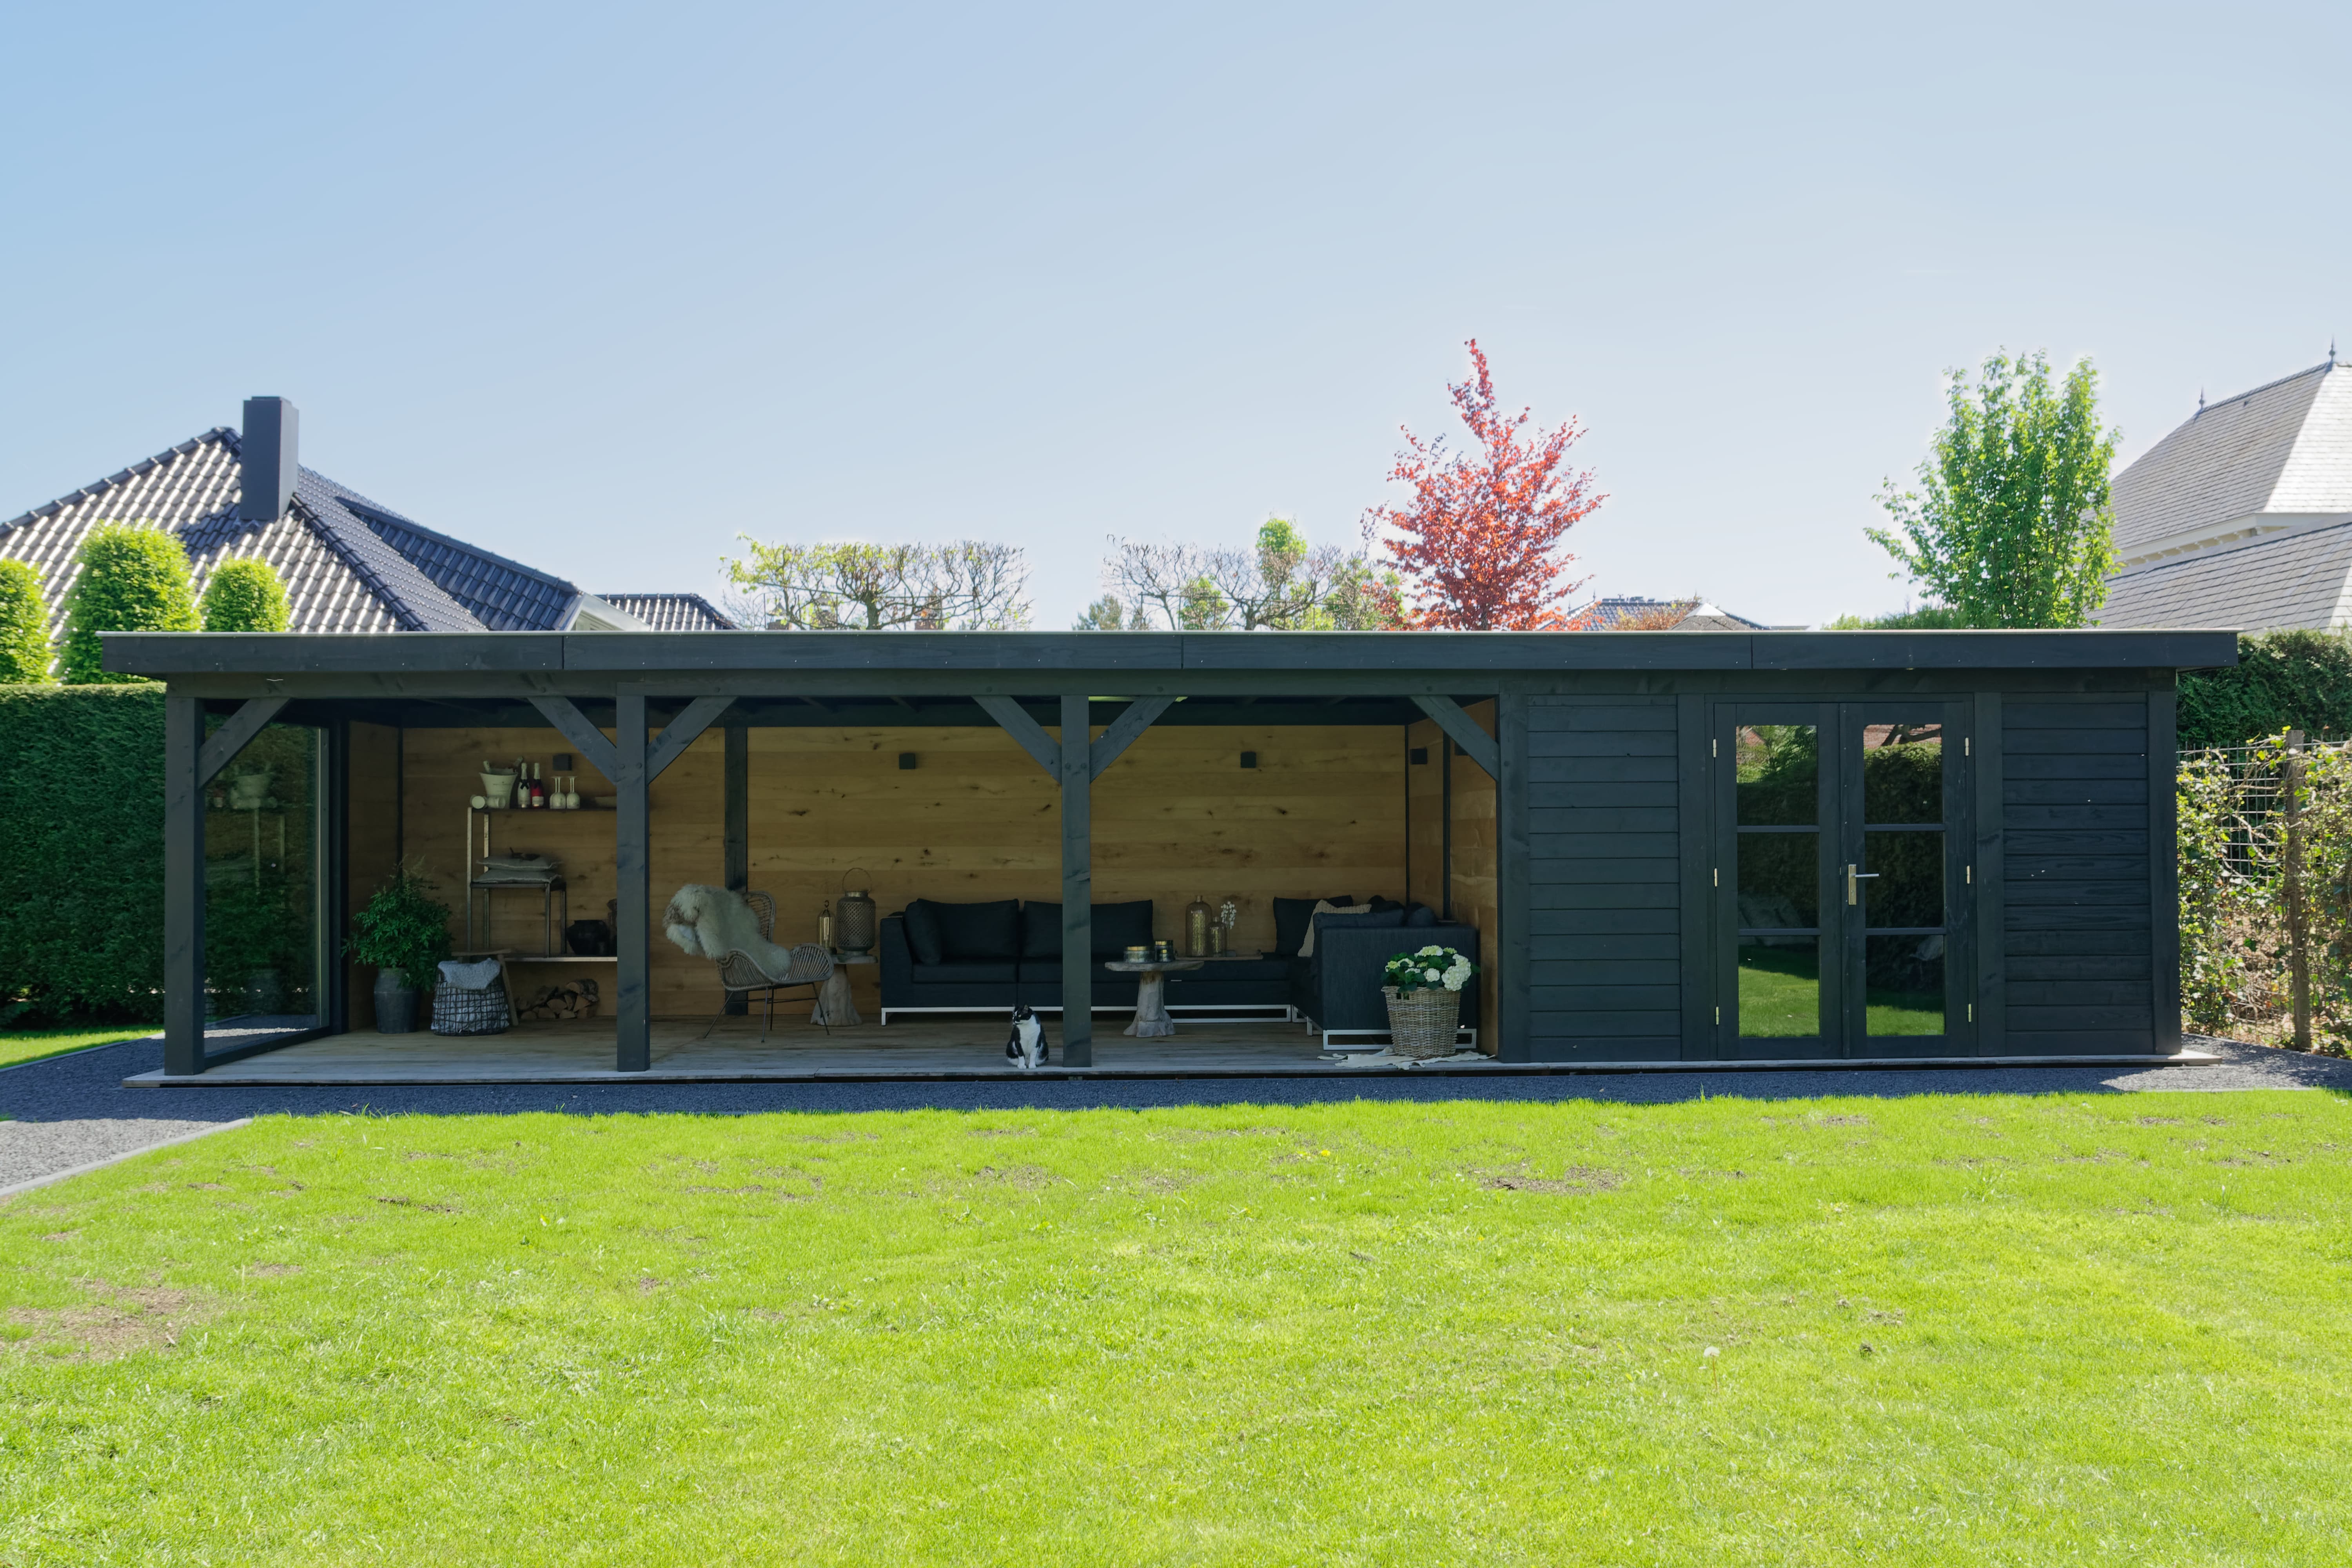 De andere dag klep sirene Project Bleiswijk: Luxe tuinhuis met tuinkamer platdak. -  Vechtdalbouwsystemen